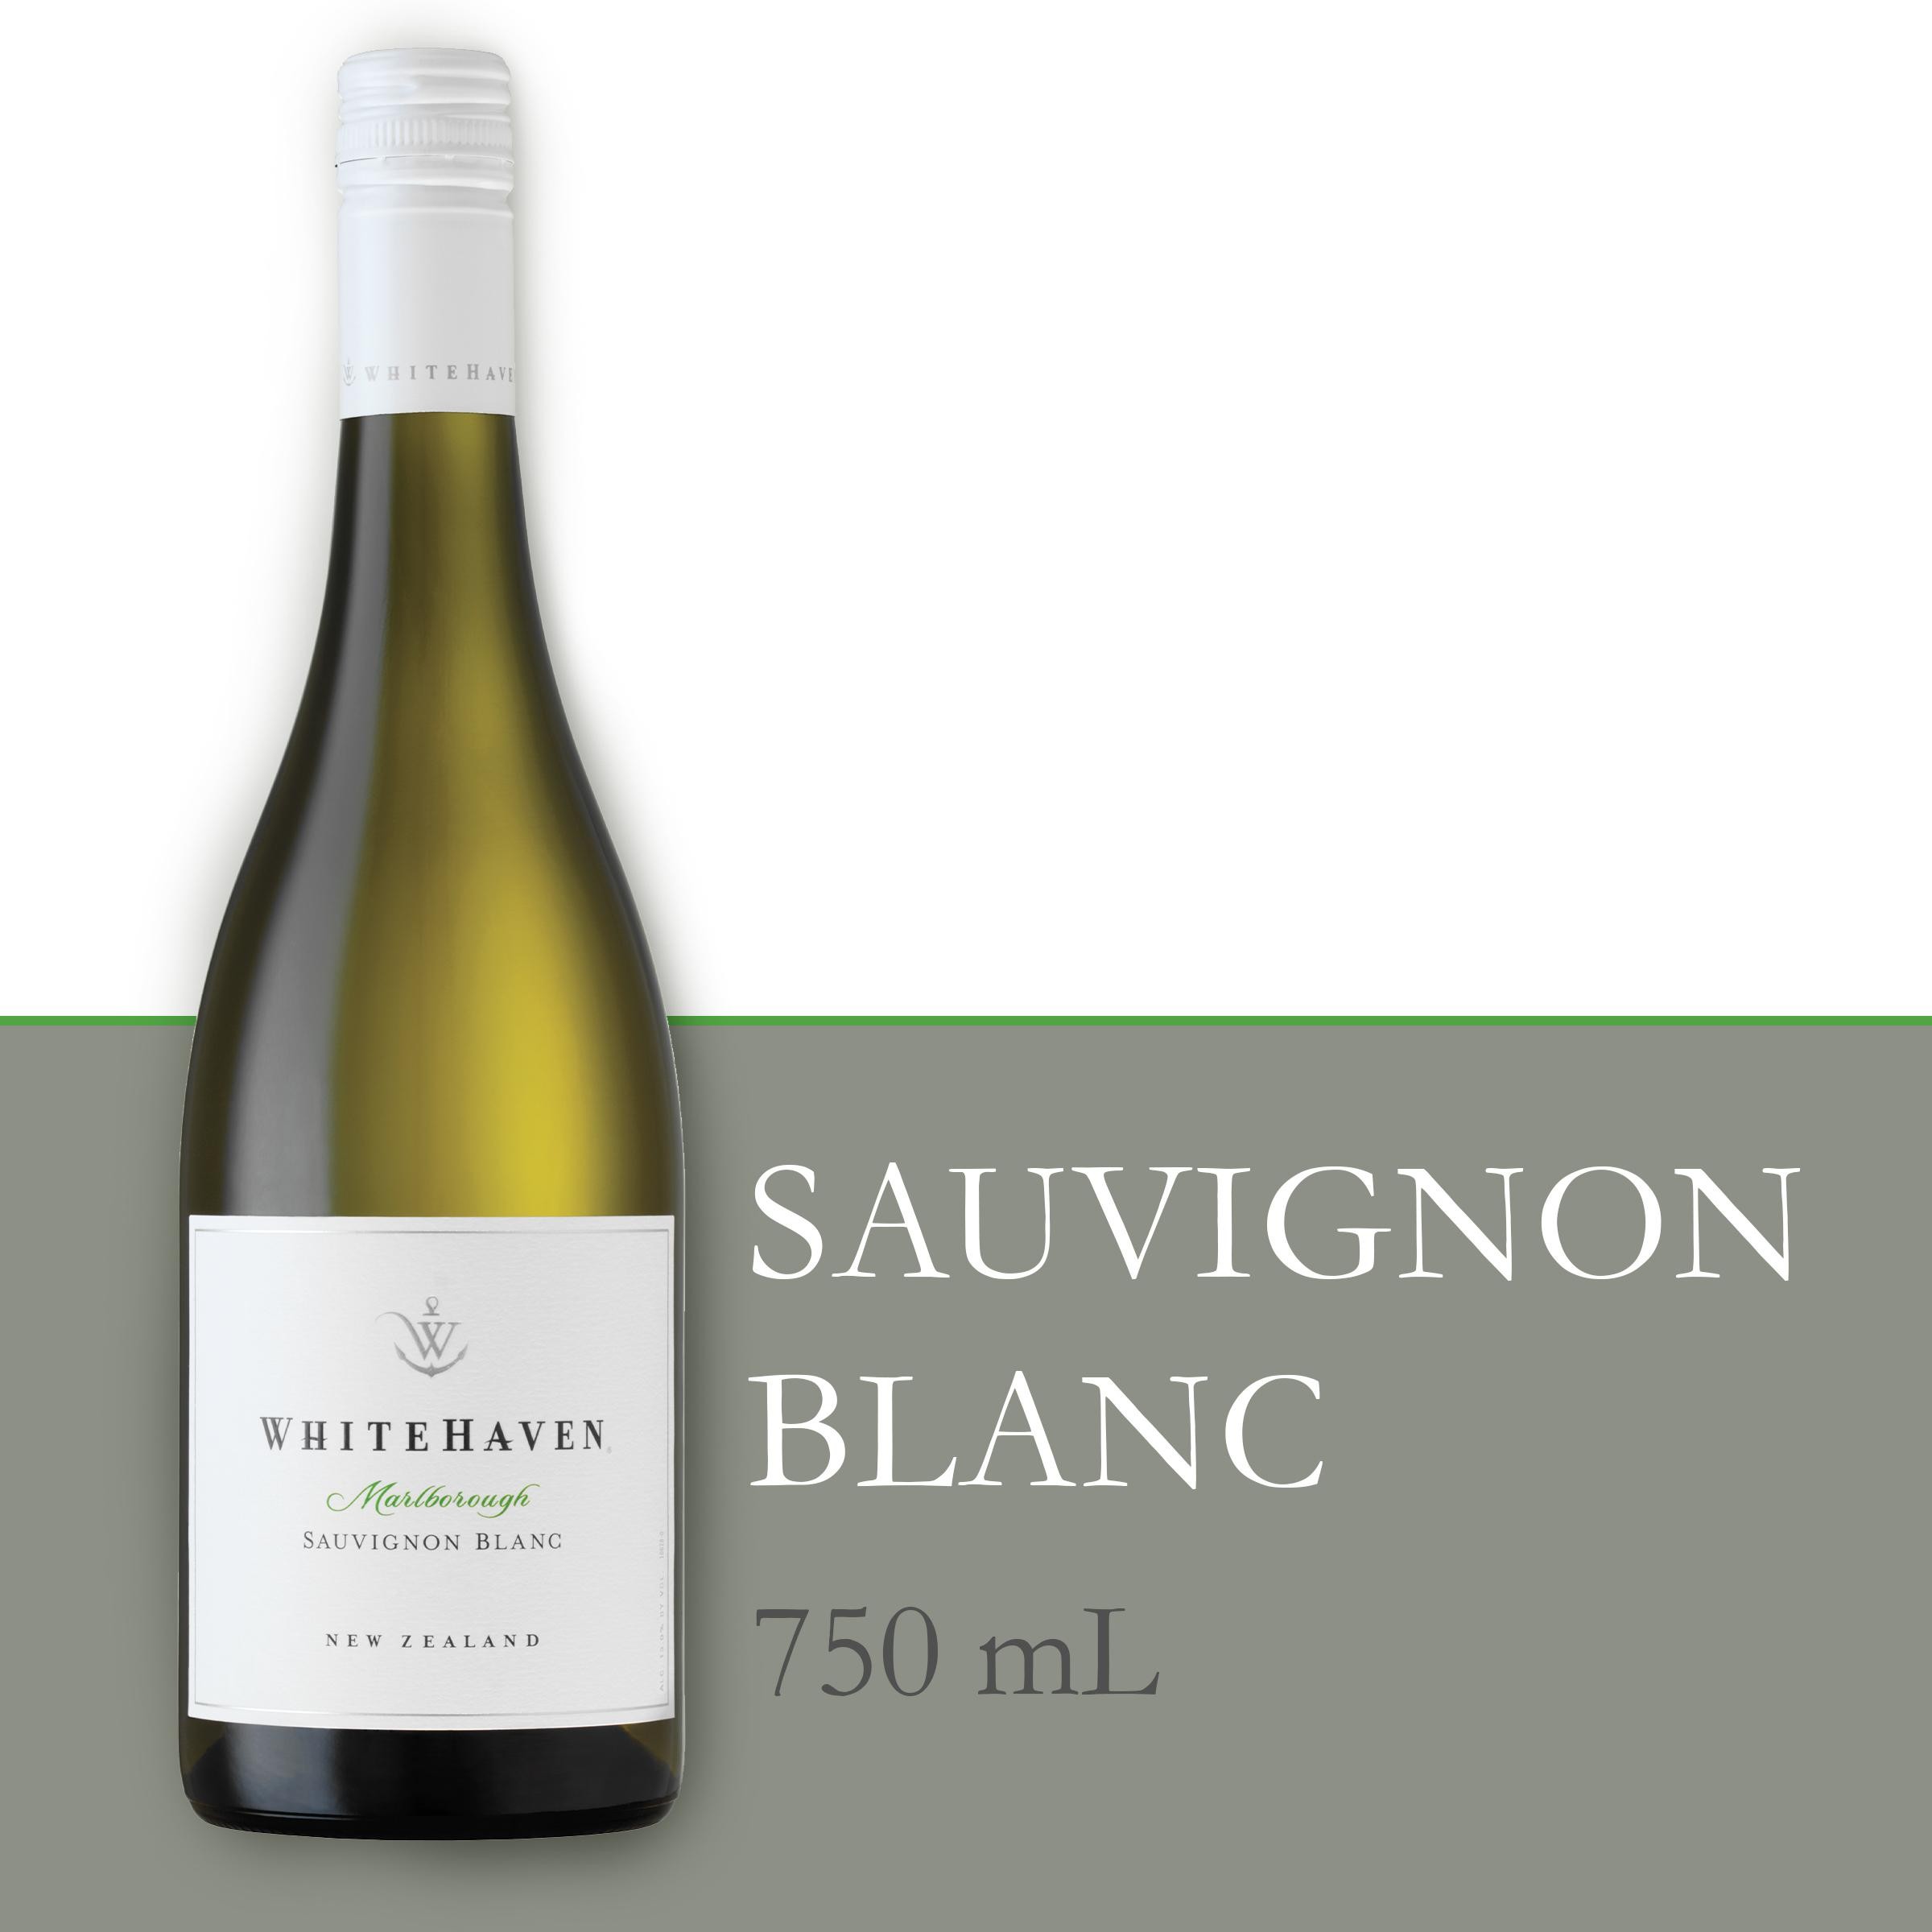 Whitehaven New Zealand Sauvignon Blanc White Wine - 750.0 Ml